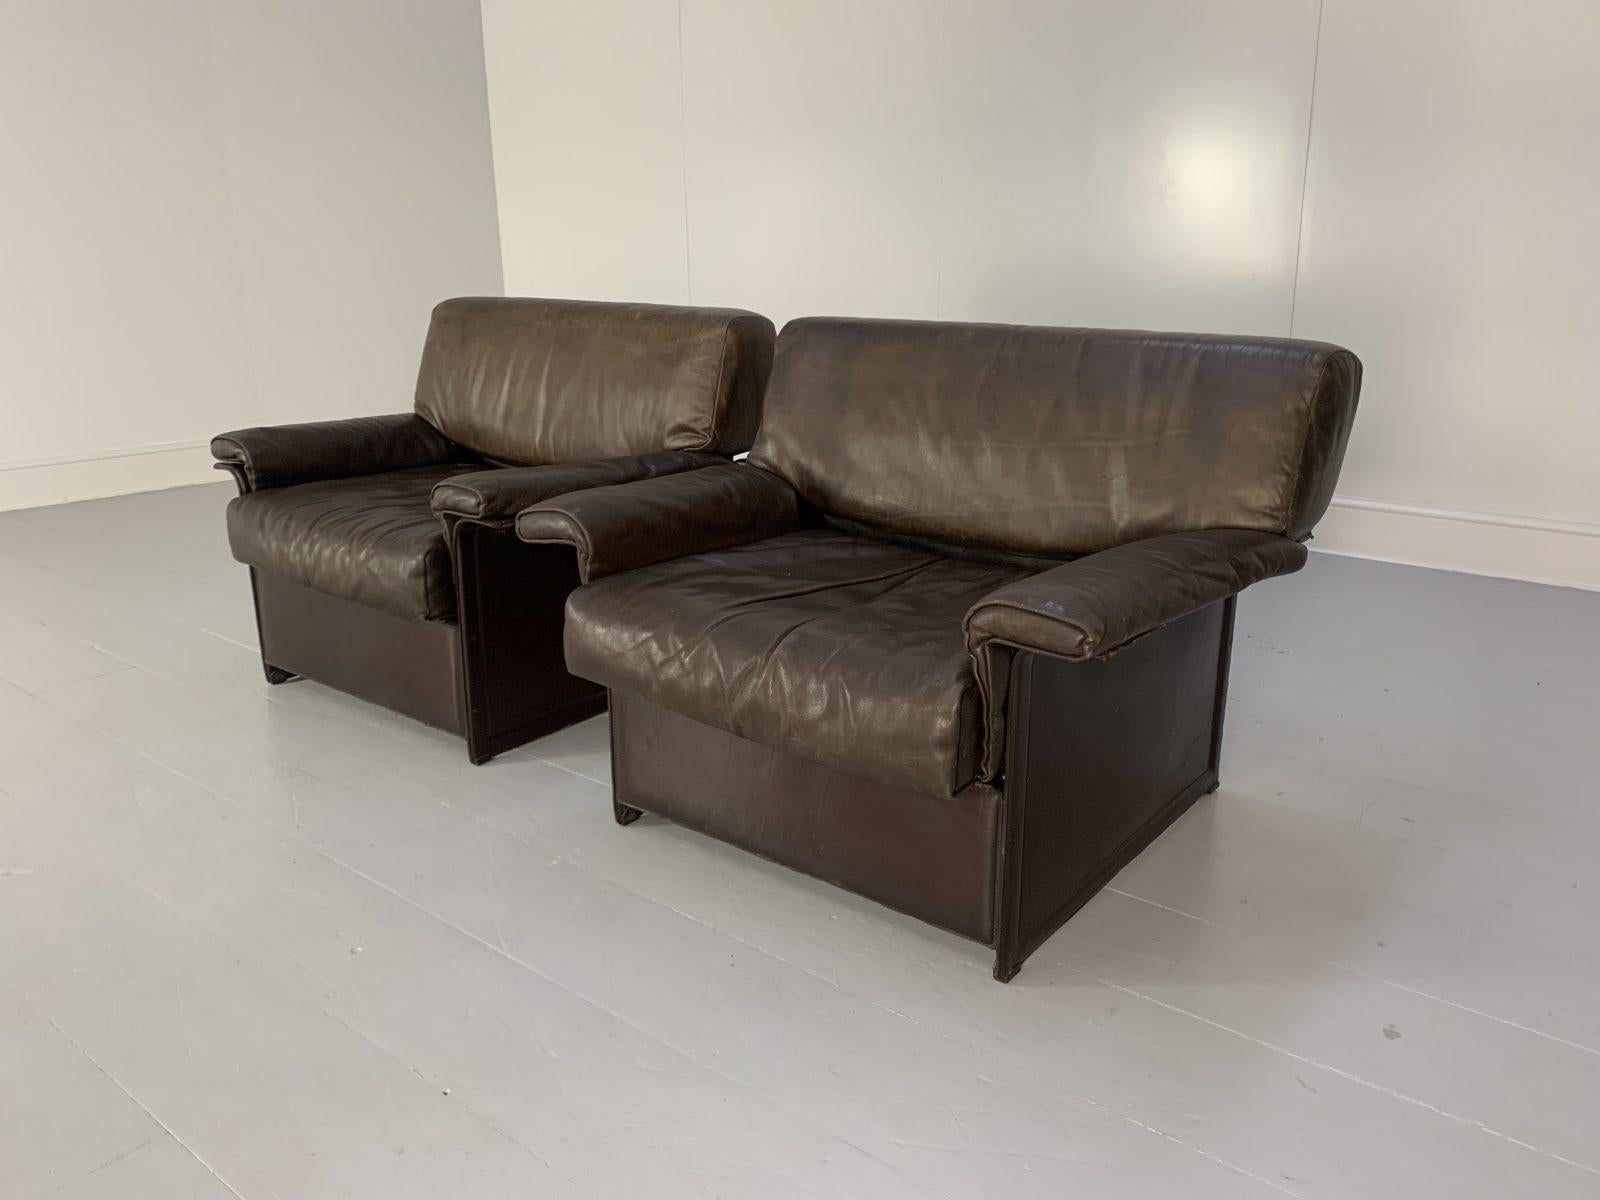 Bonjour les amis, et bienvenue à une nouvelle offre incontournable de Lord Browns Furniture, la première source de canapés et de chaises de qualité au Royaume-Uni.

L'offre porte sur une paire de fauteuils Matteo Grassi 